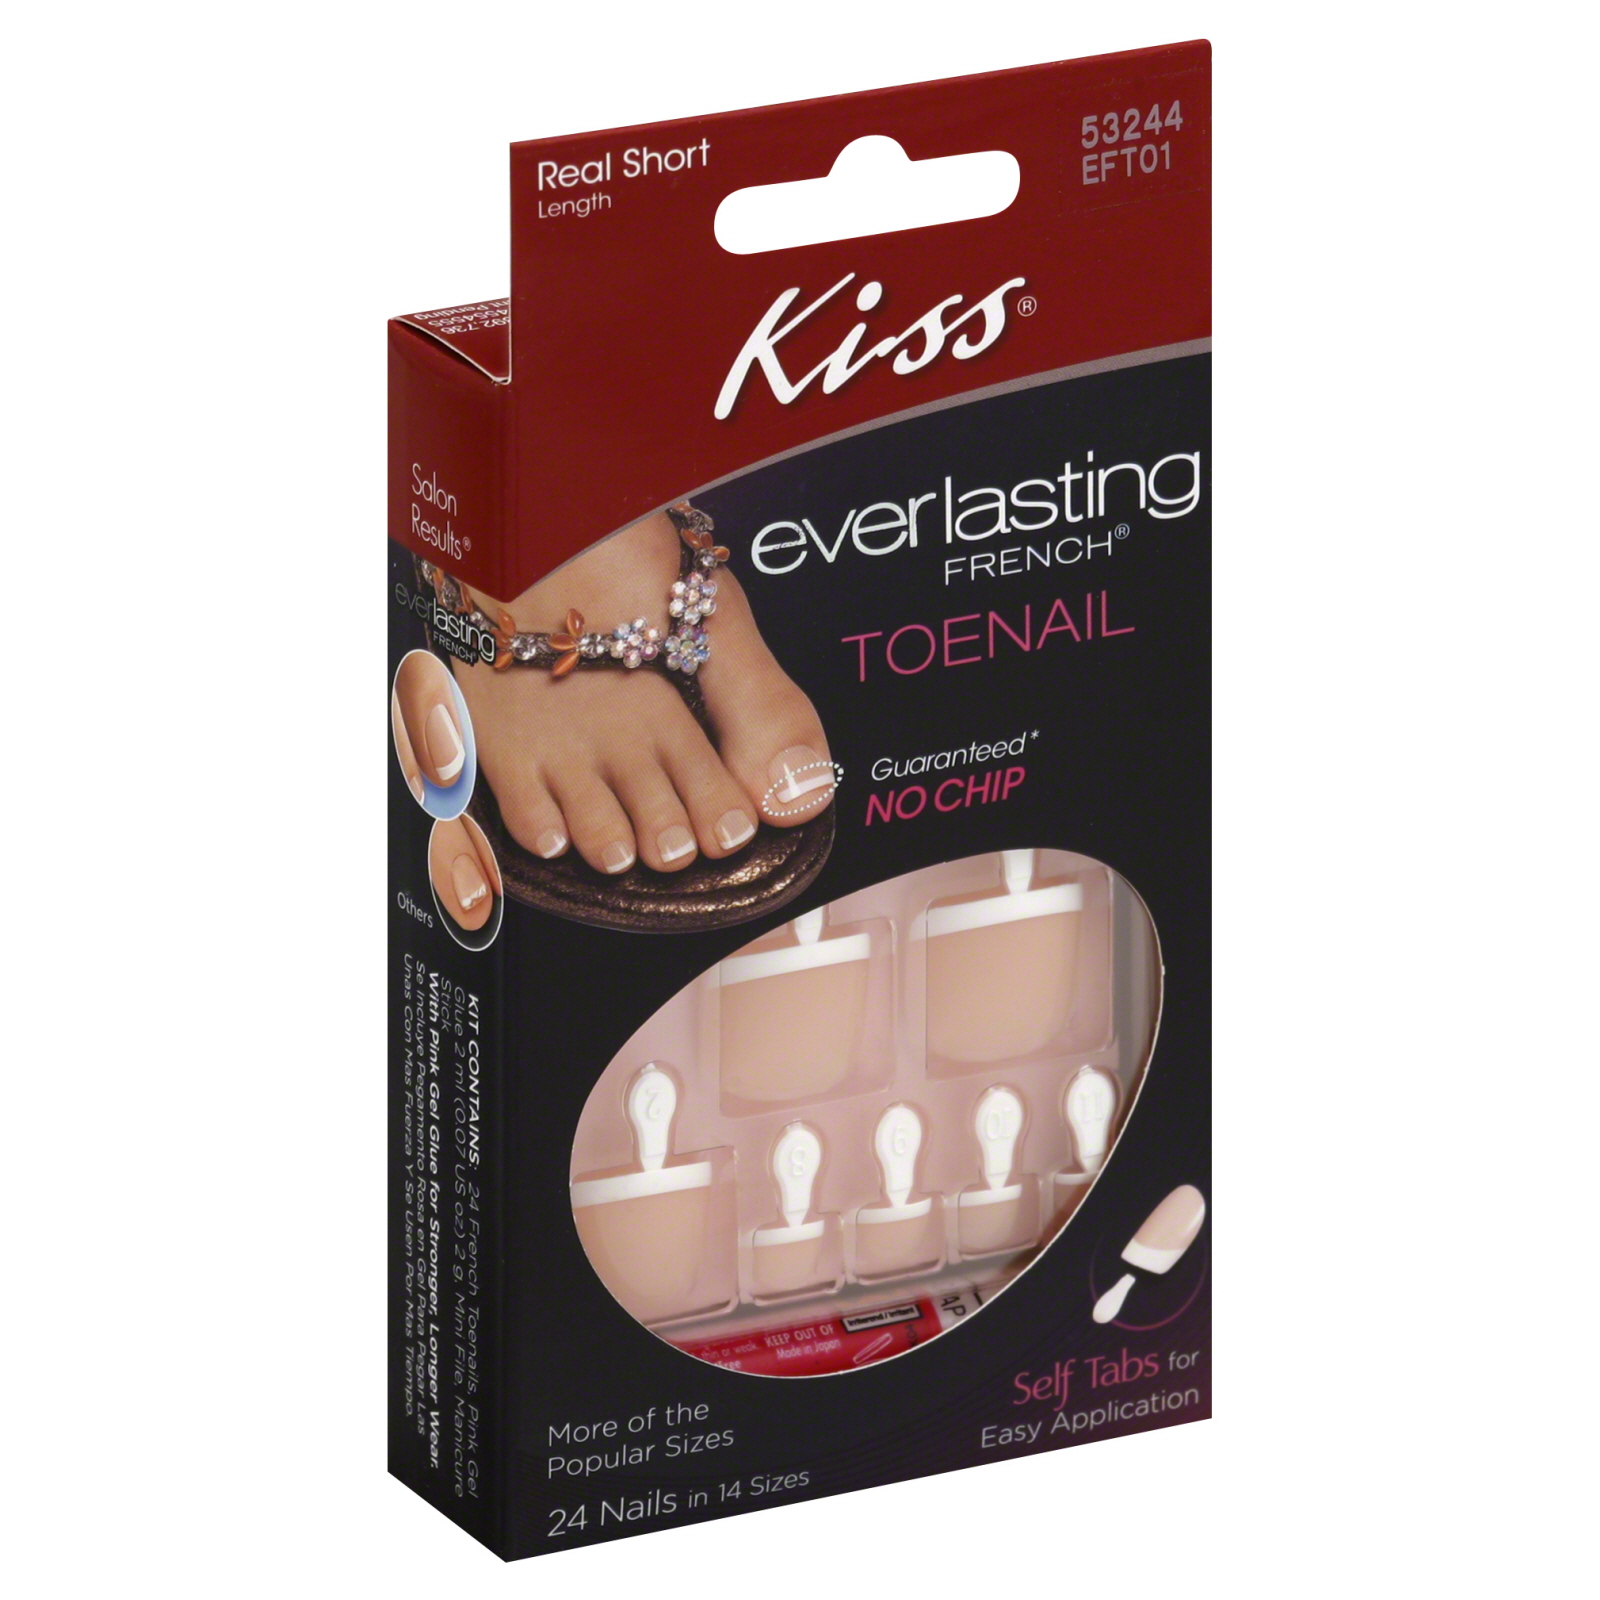 Kiss Everlasting French Toenail Kit, Short Length, Limitless EFT01, 1 kit